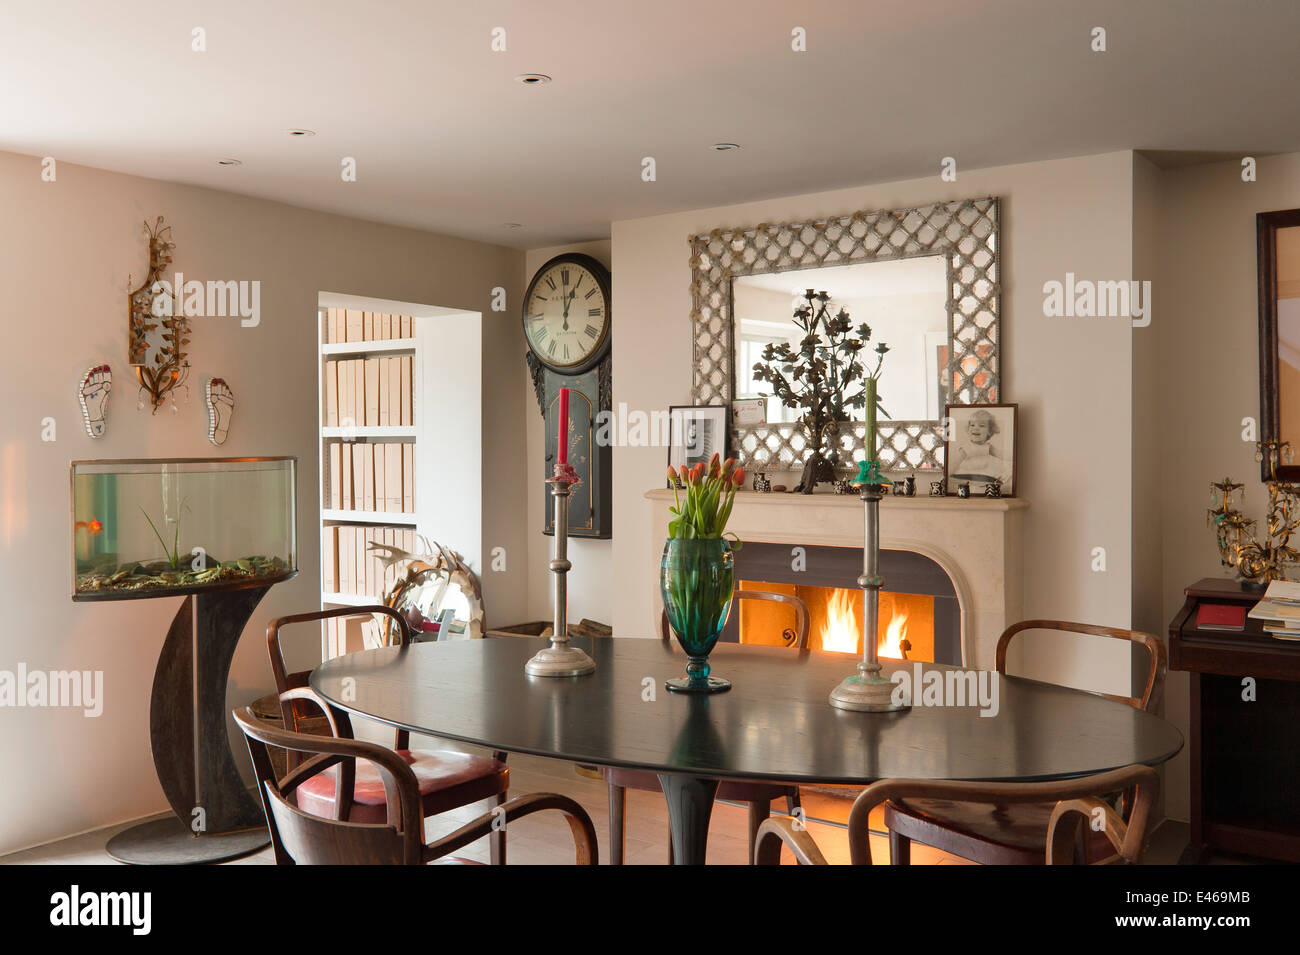 Salle à manger avec cheminée Photo Stock - Alamy